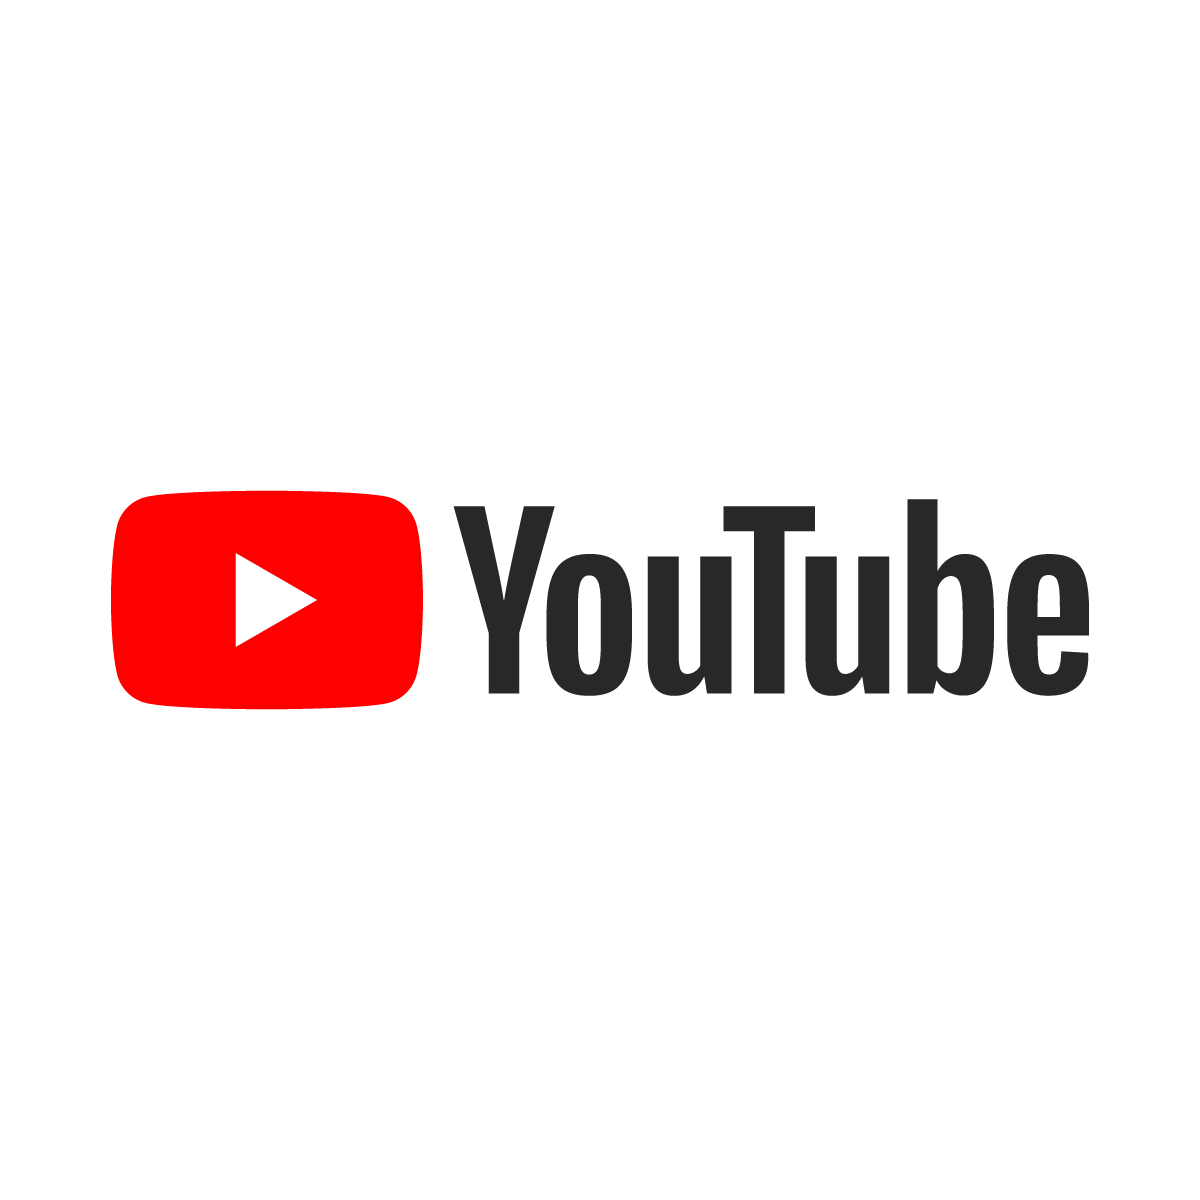 YouTube sempre più social: i video più visti nell’Alessandrino e gli strumenti per renderli virali